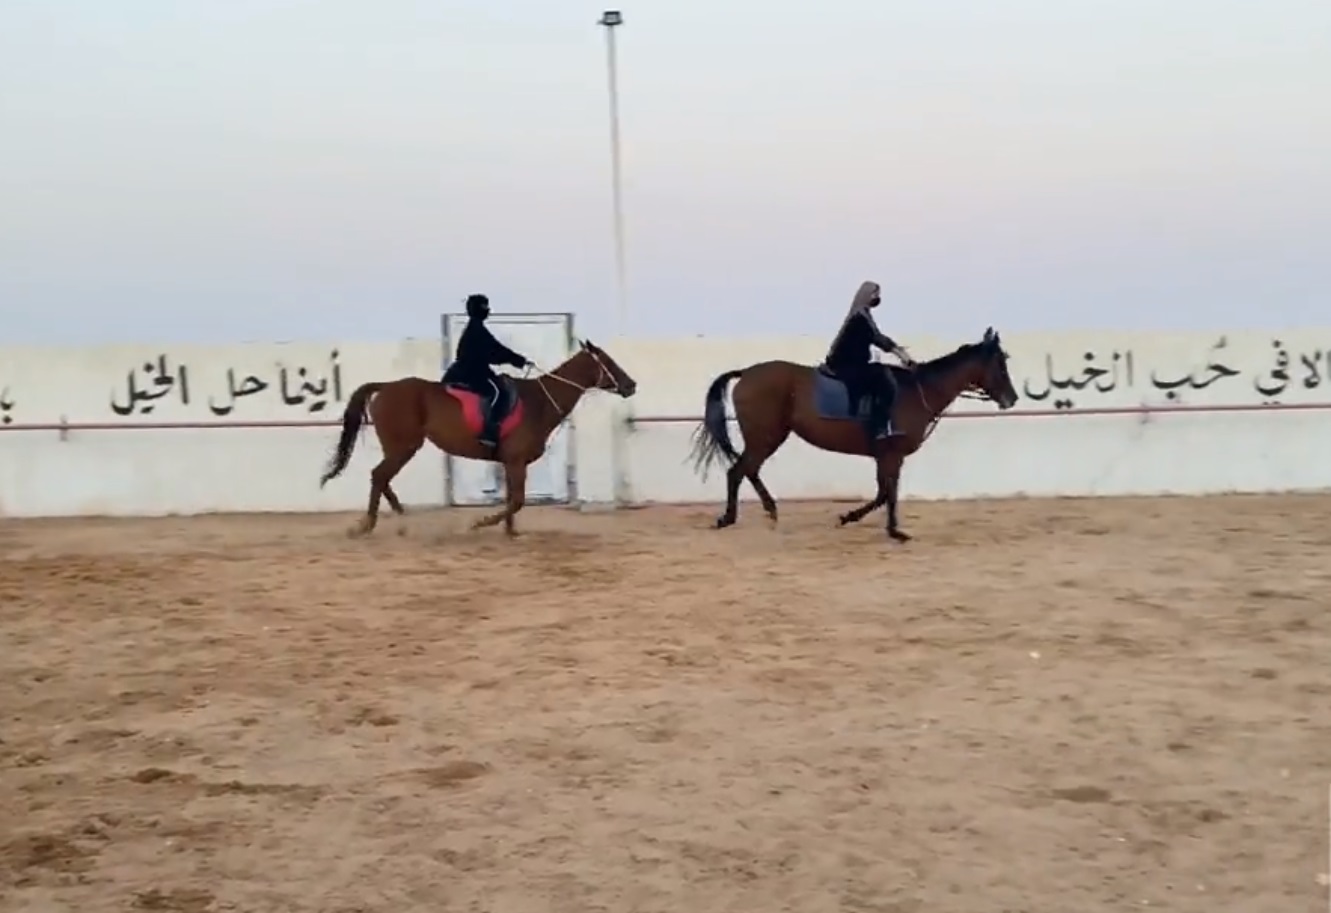 شاهد: سعوديات يروين تجربتهن في ممارسة رياضة ركوب الخيل بـ"حفر الباطن"